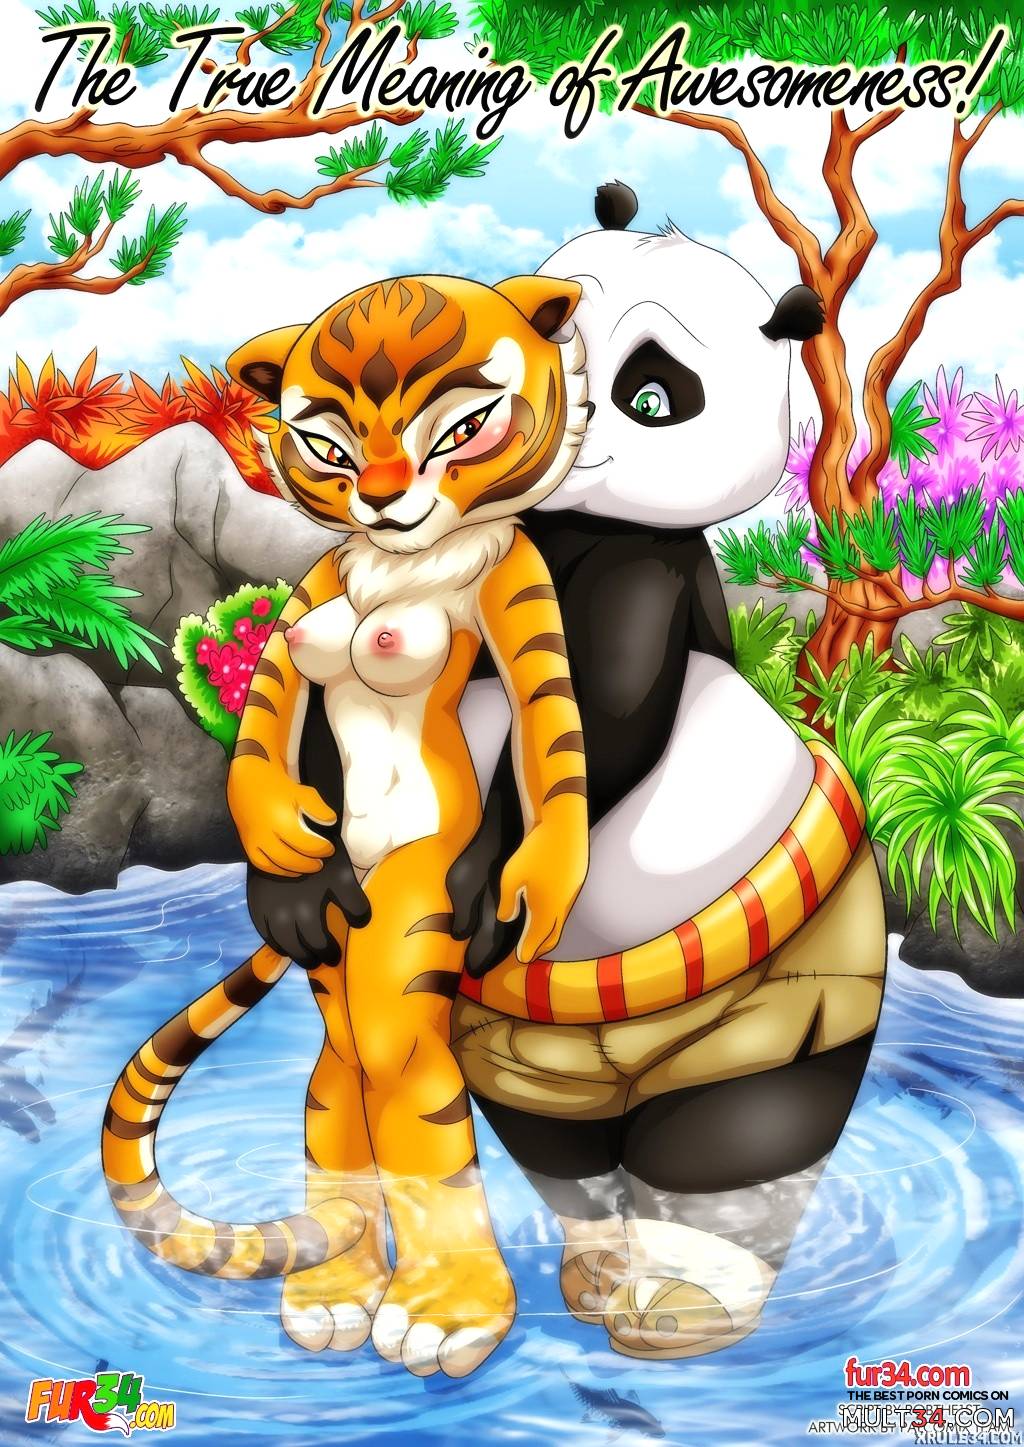 Tigresa de kung fu panda porn comics